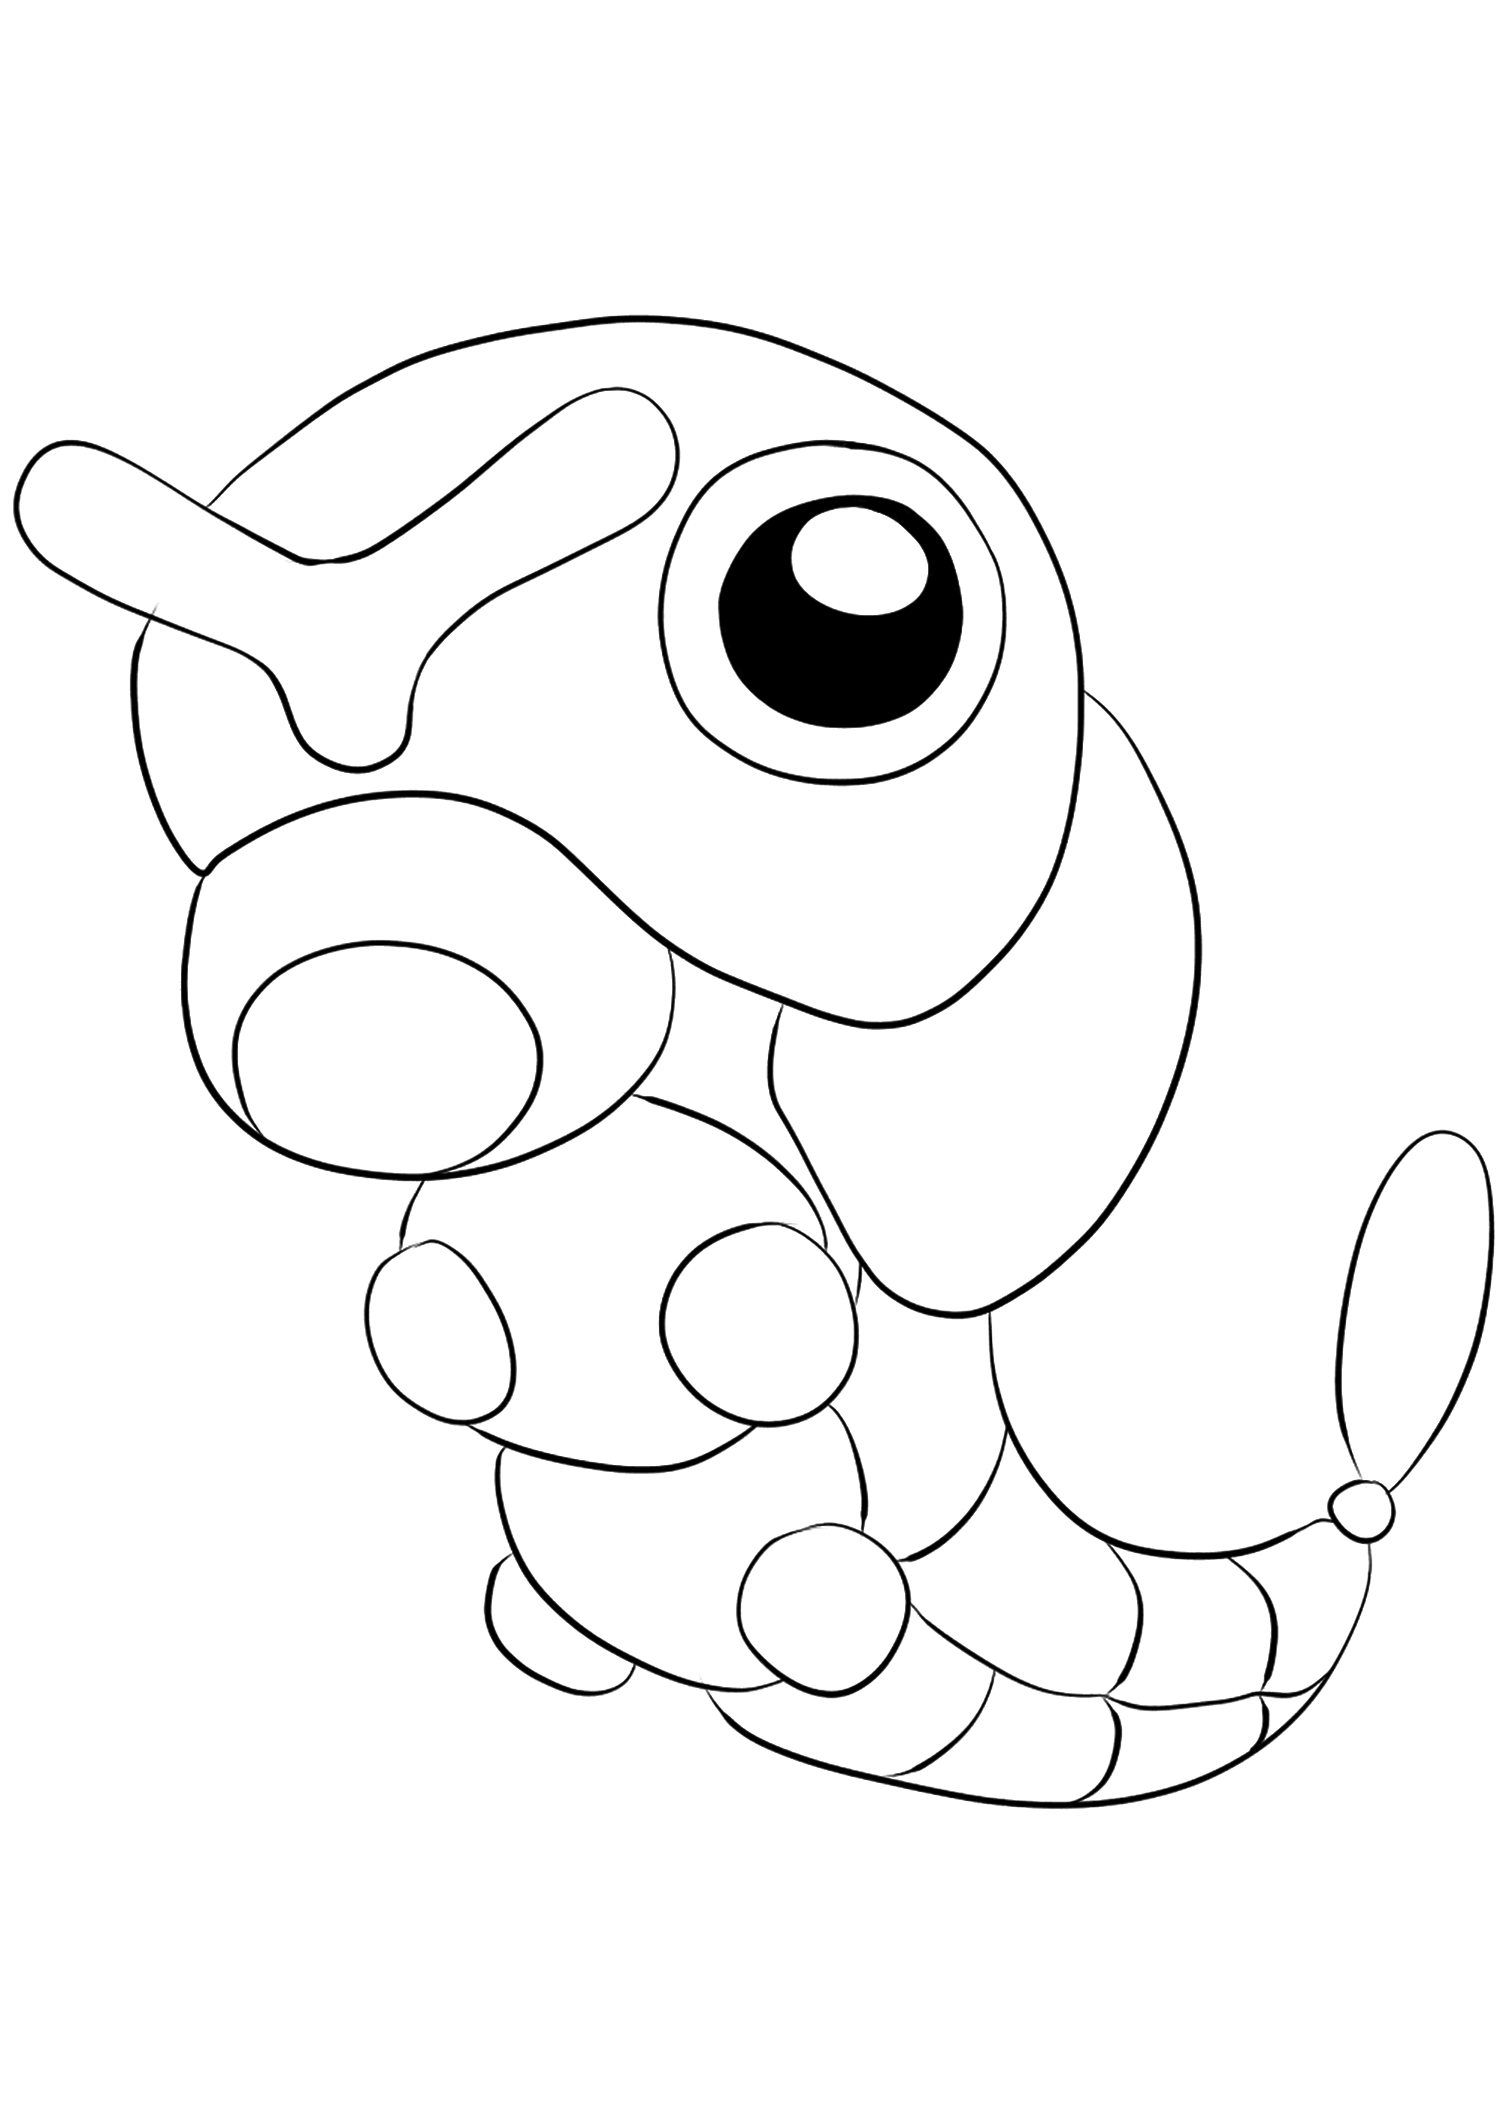 Chenipan (No.10). Coloriage de Chenipan (Caterpie), Pokémon de Génération I, de type : InsectePermission: Todos os direitos reservados © Pokémon company e Ken Sugimori.